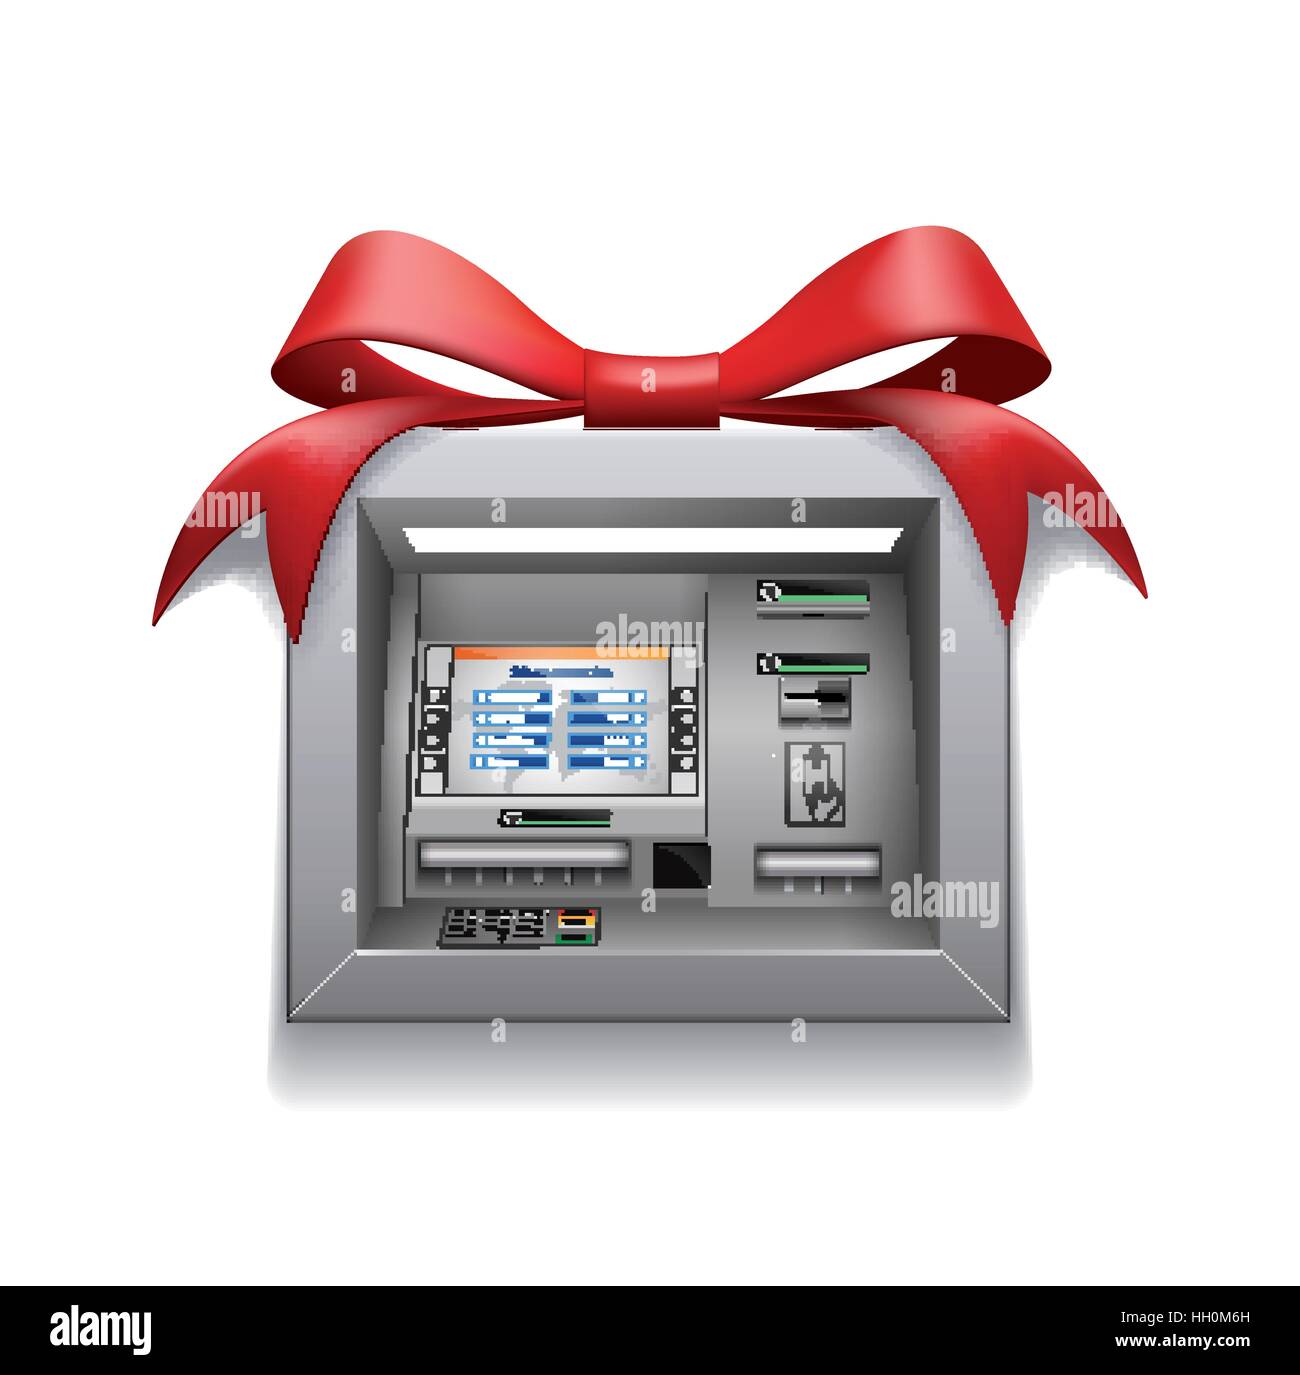 L'argent de Noël - ATM Illustration de Vecteur